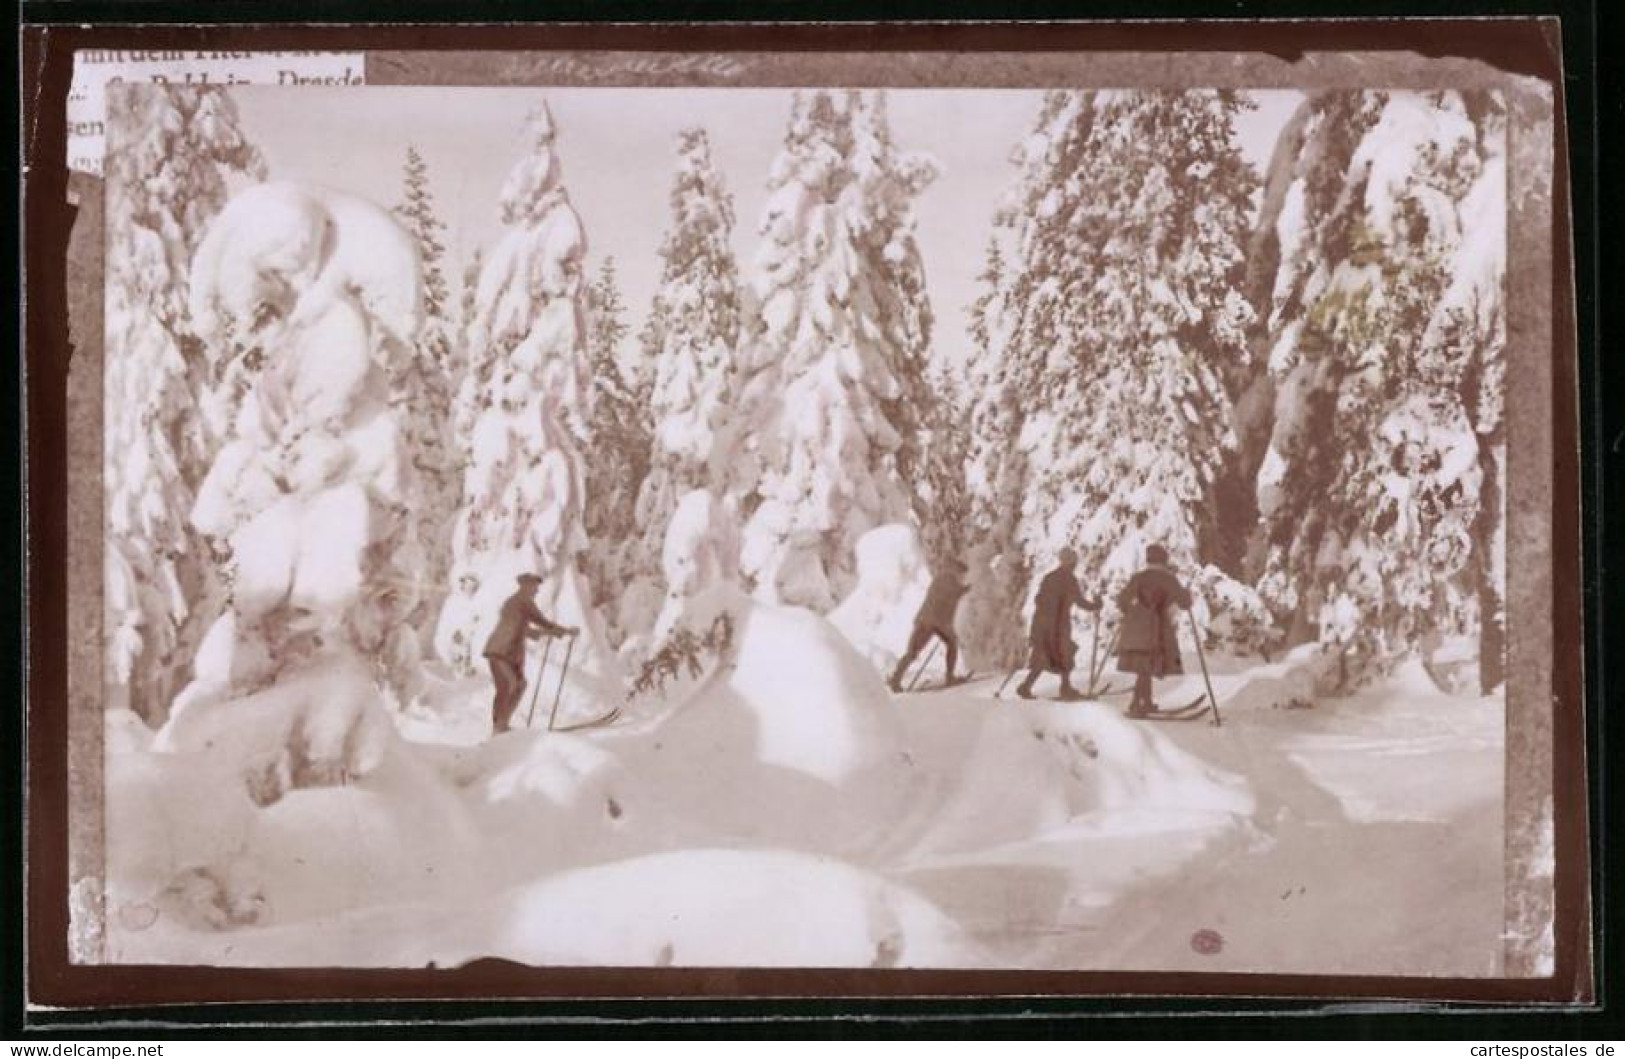 Fotografie Brück & Sohn Meissen, Ansicht Oberbärenburg I. Erzg., Skieläufer Im Verschneiten Wald Beim Auslauf  - Lieux